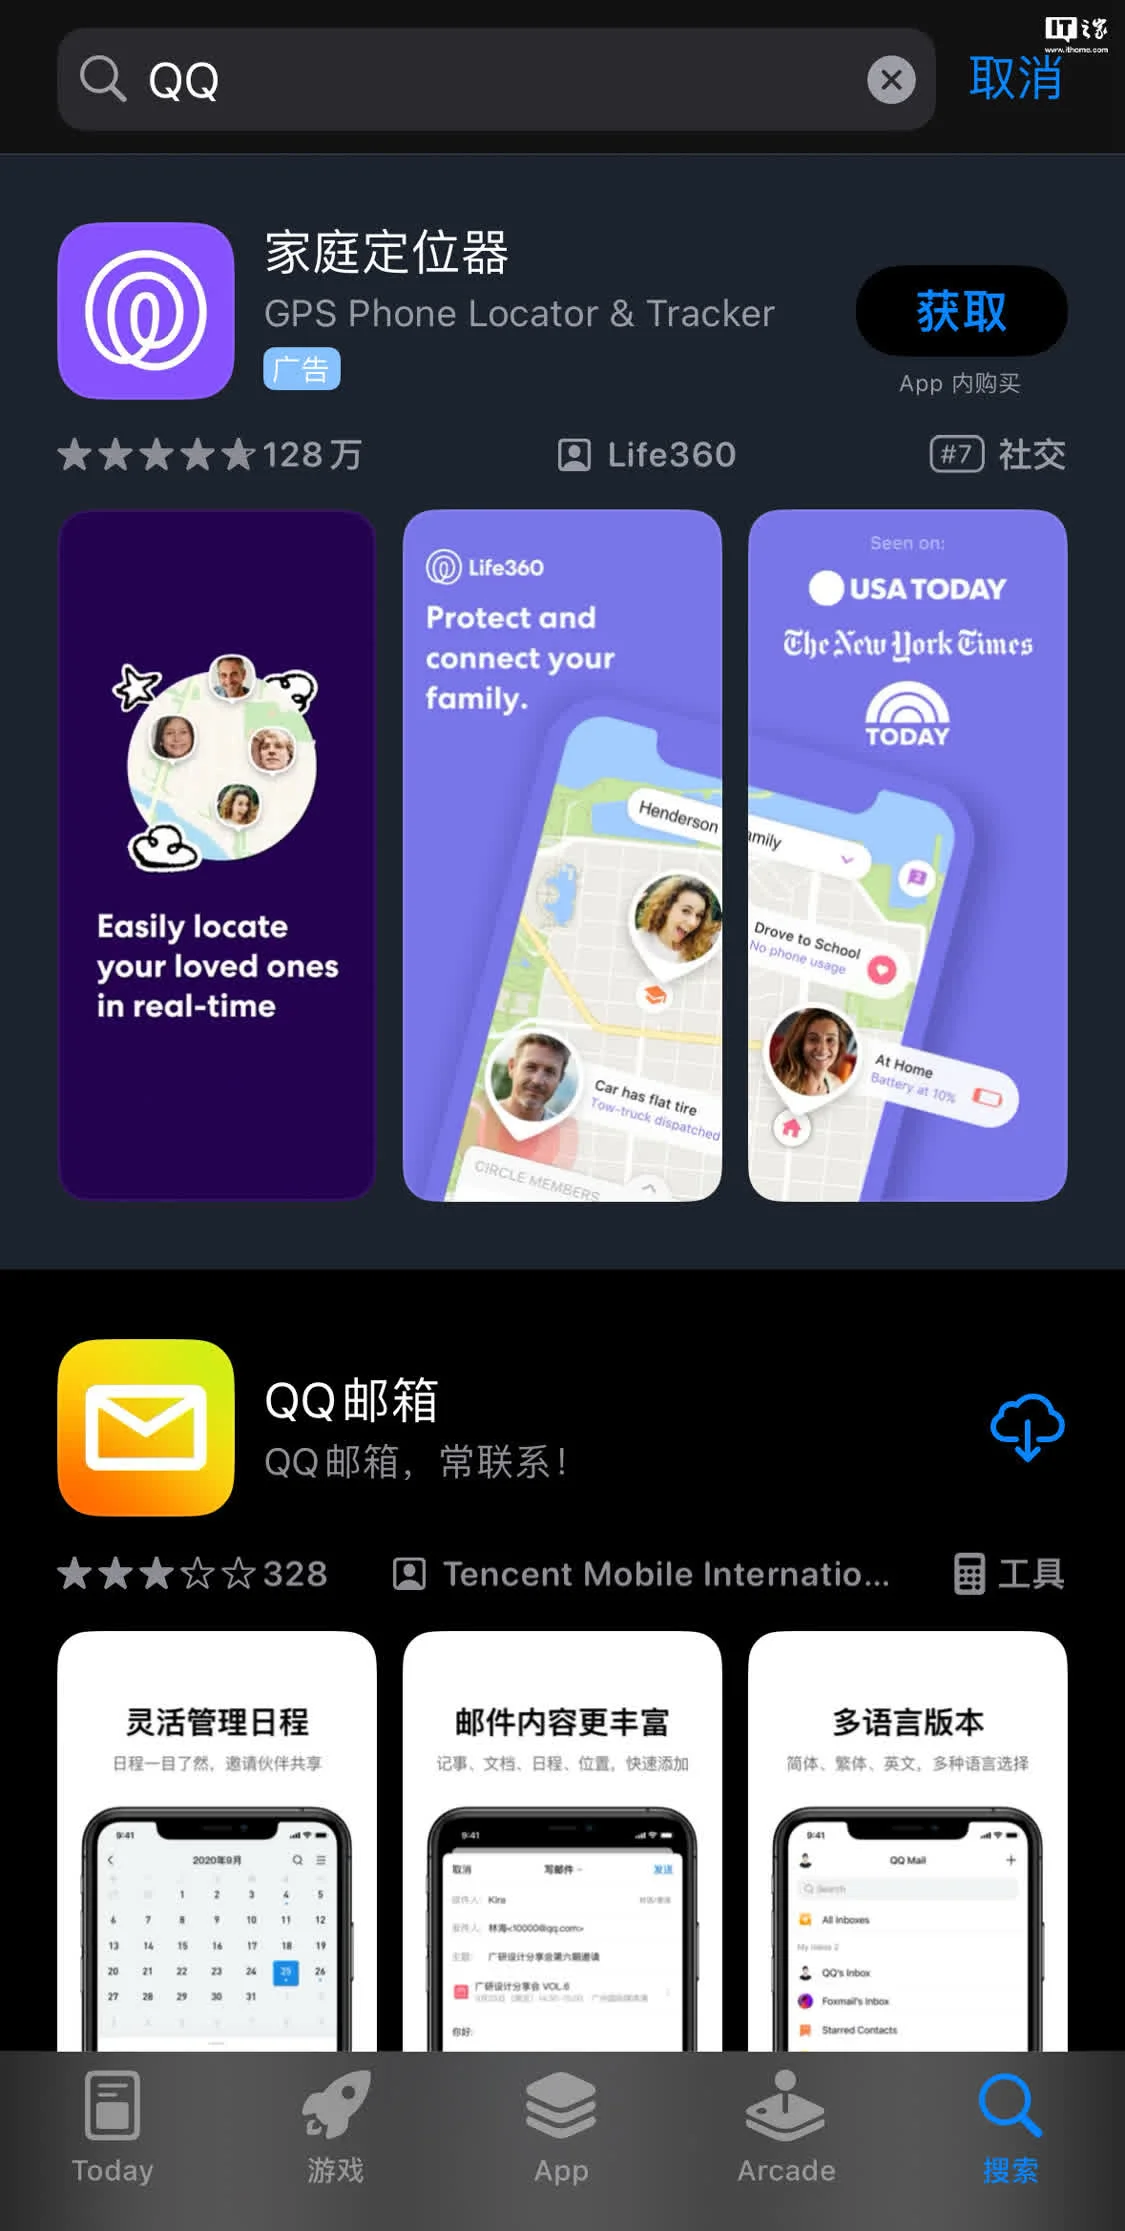 iOS平台中“腾讯QQ”搜索结果